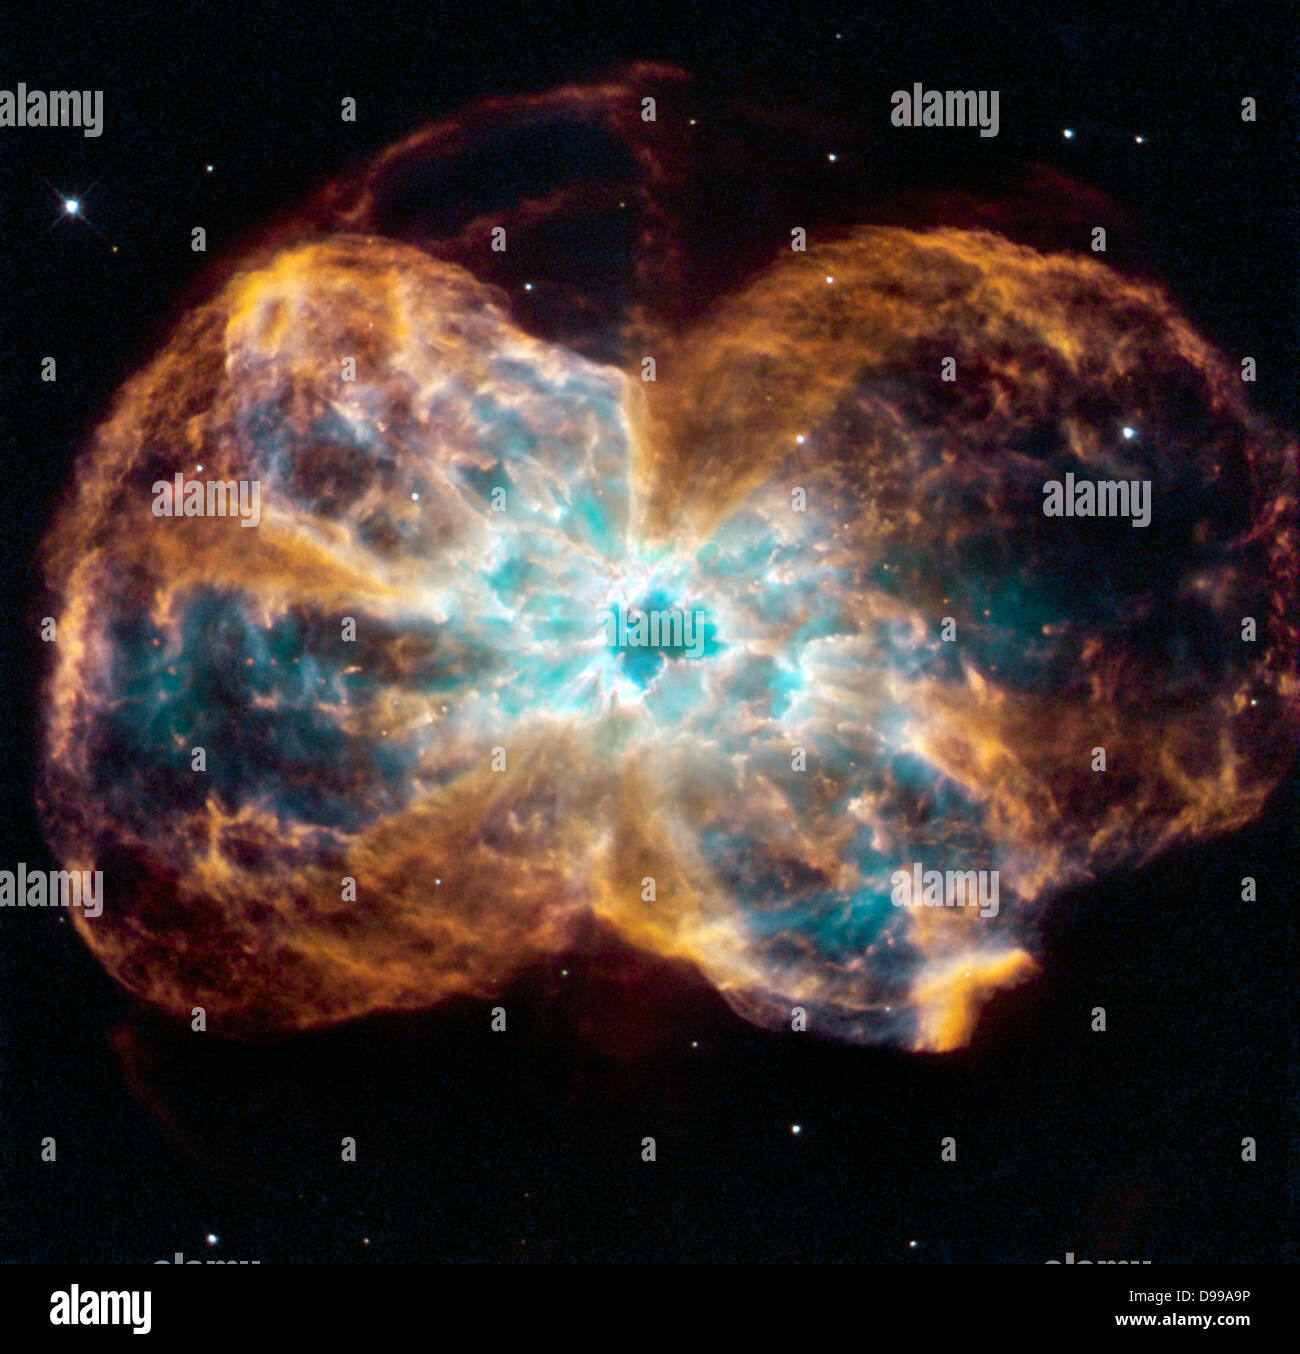 La stella è di terminare la sua vita mediante colata fuori i suoi strati esterni di gas che si è formato un bozzolo attorno alla stella il rimanente nucleo. La luce ultravioletta dal morire star rende il materiale incandescente. Il bruciate le star, chiamato un nano bianco, è il puntino bianco al centro. Telescopio Spaziale Hubble (HST). Foto Stock